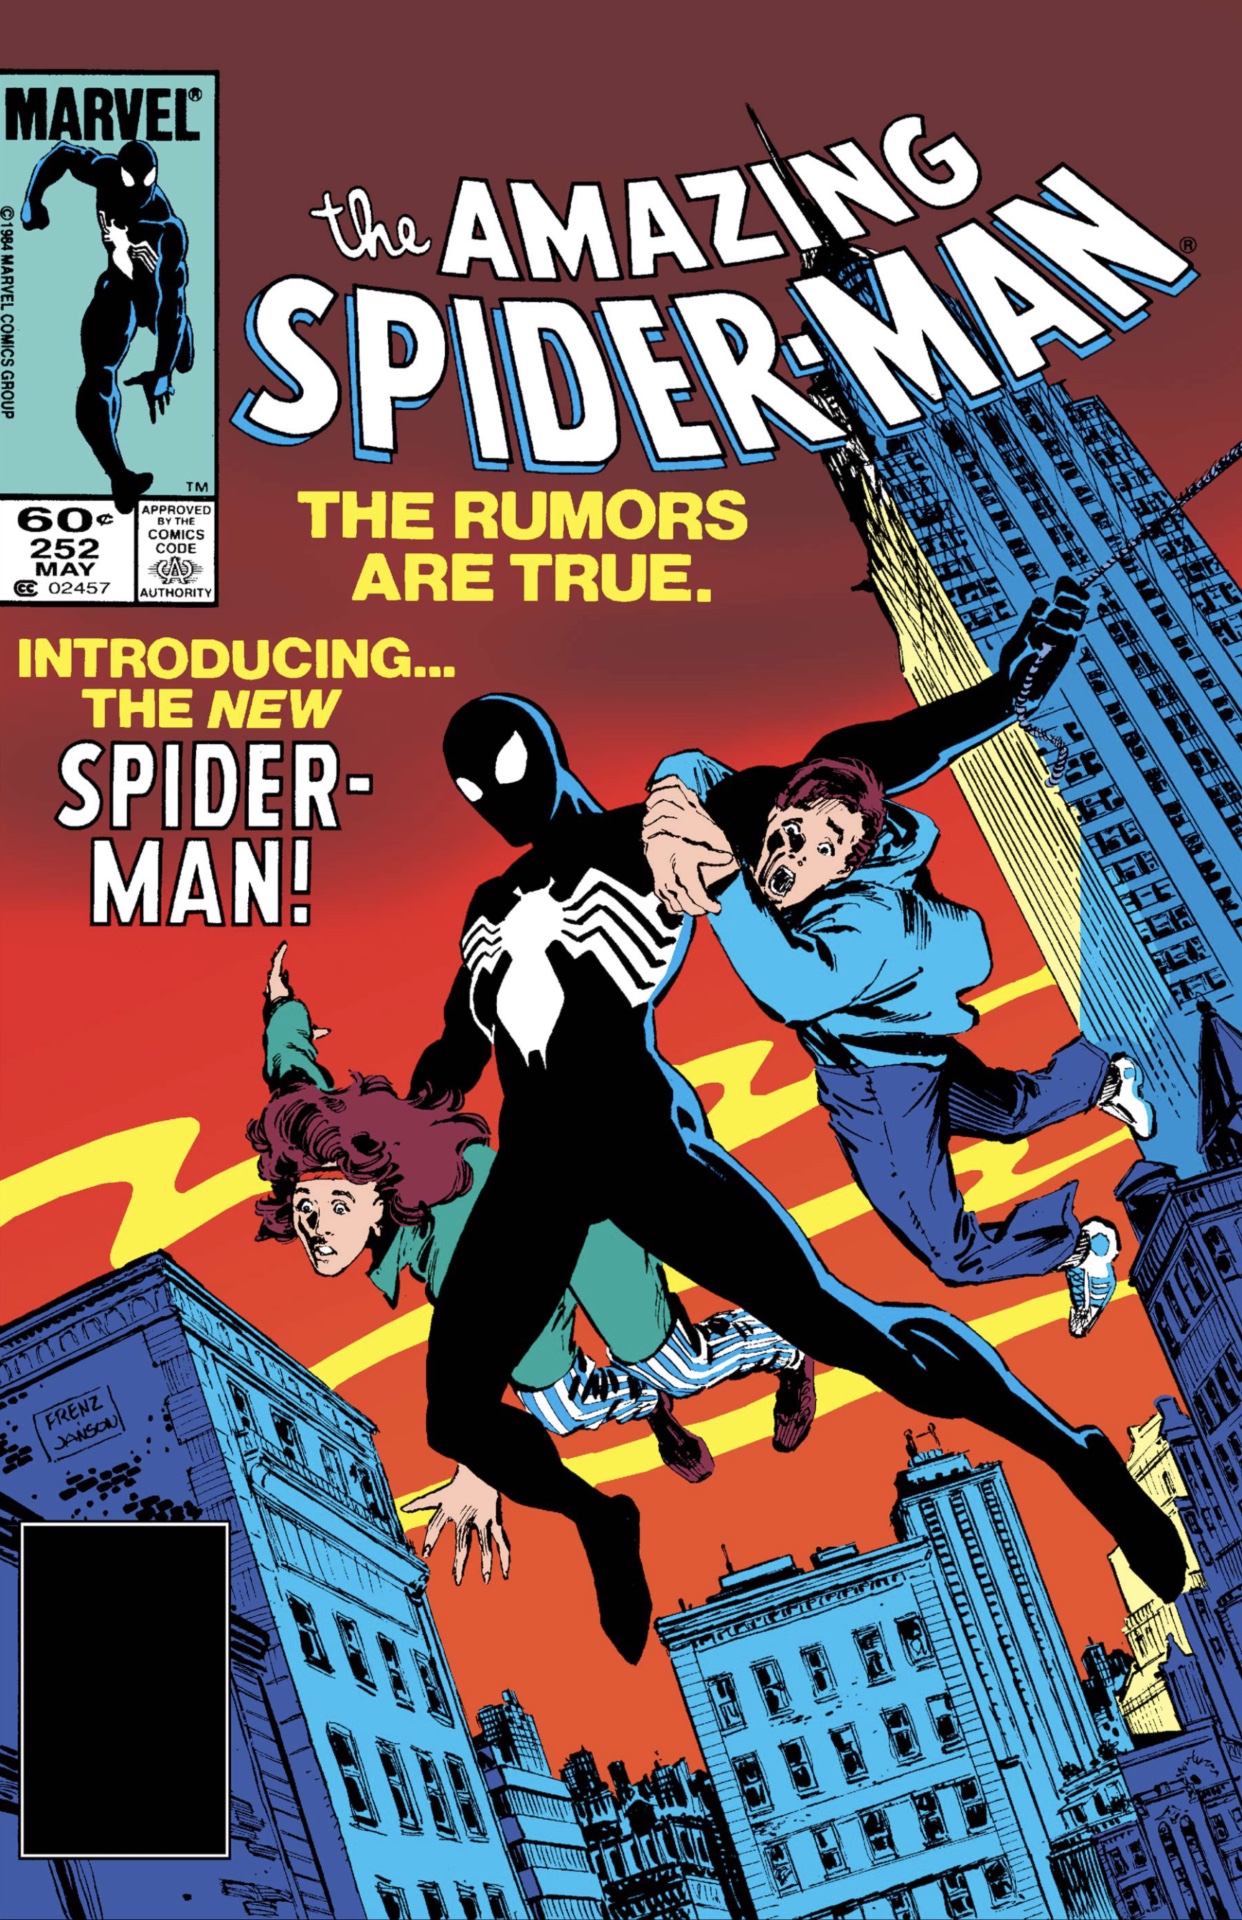 Incroyable couverture de Spider-Man # 252